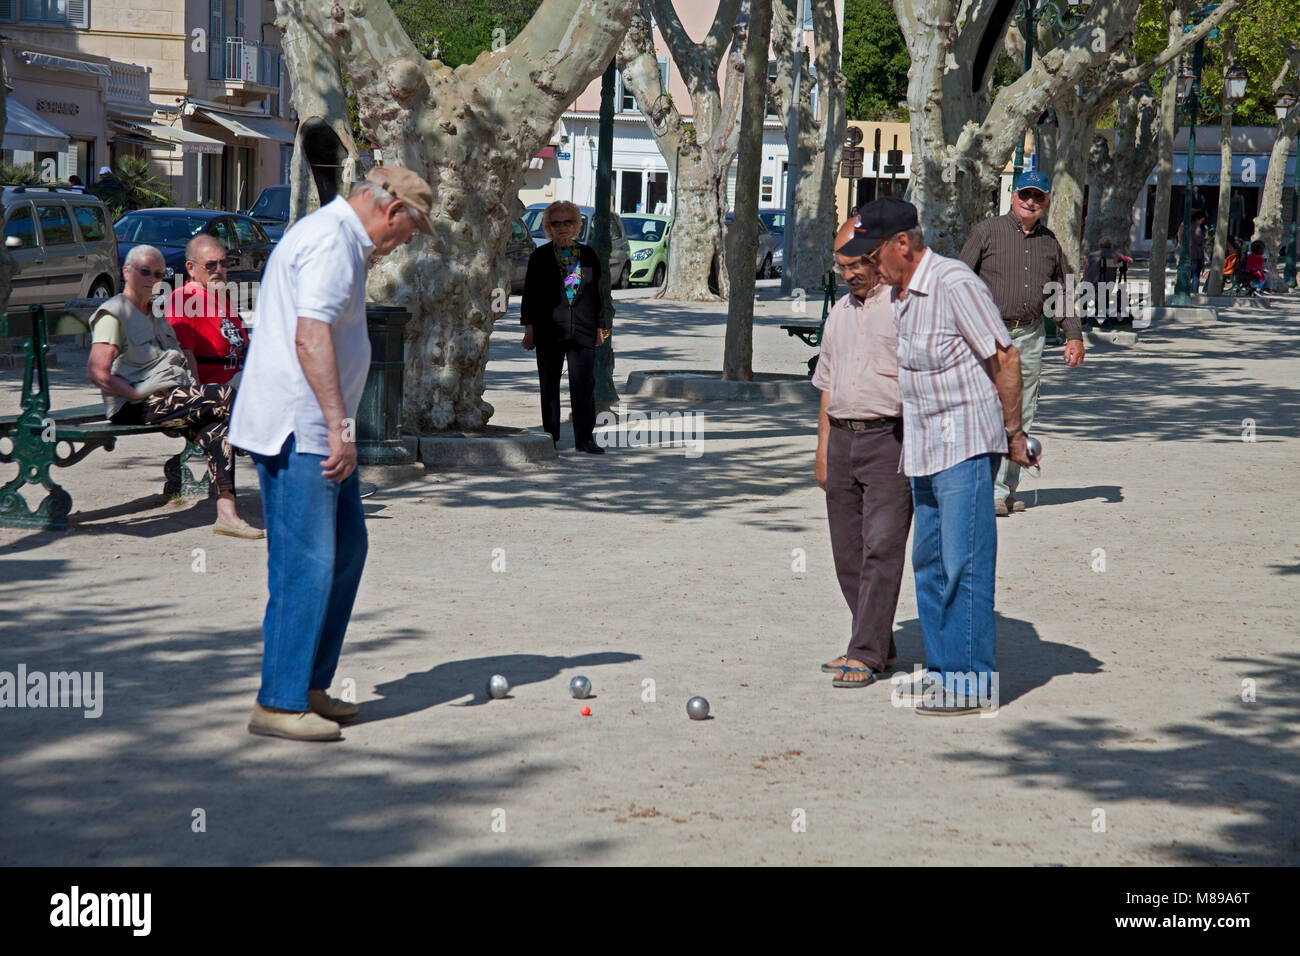 Les hommes de jouer aux boules (pétanque) à la Place des Lices, un jeu populaire, vieille ville de Saint-Tropez, Côte d'Azur, France Sud, Côte d'Azur, France, Union européenne Banque D'Images